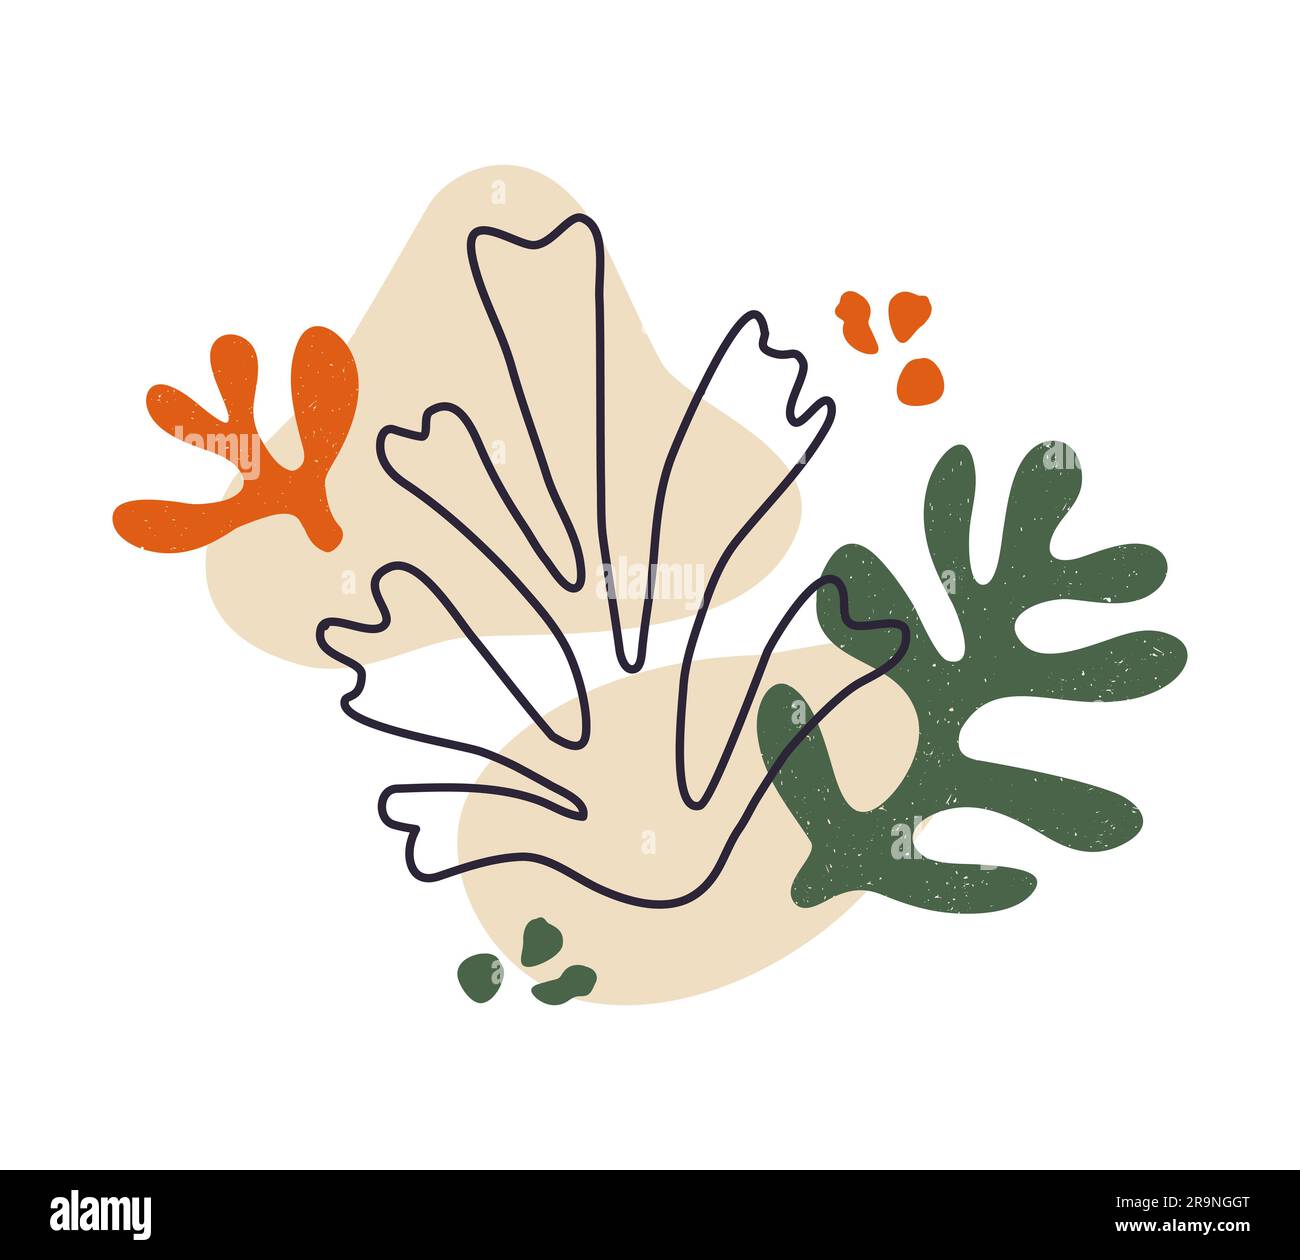 Composizione vettoriale contemporanea con estetiche foglie astratte disegnate a mano e forme fluide. Illustrazione floreale ispirata a Creative Matisse. Childi Illustrazione Vettoriale